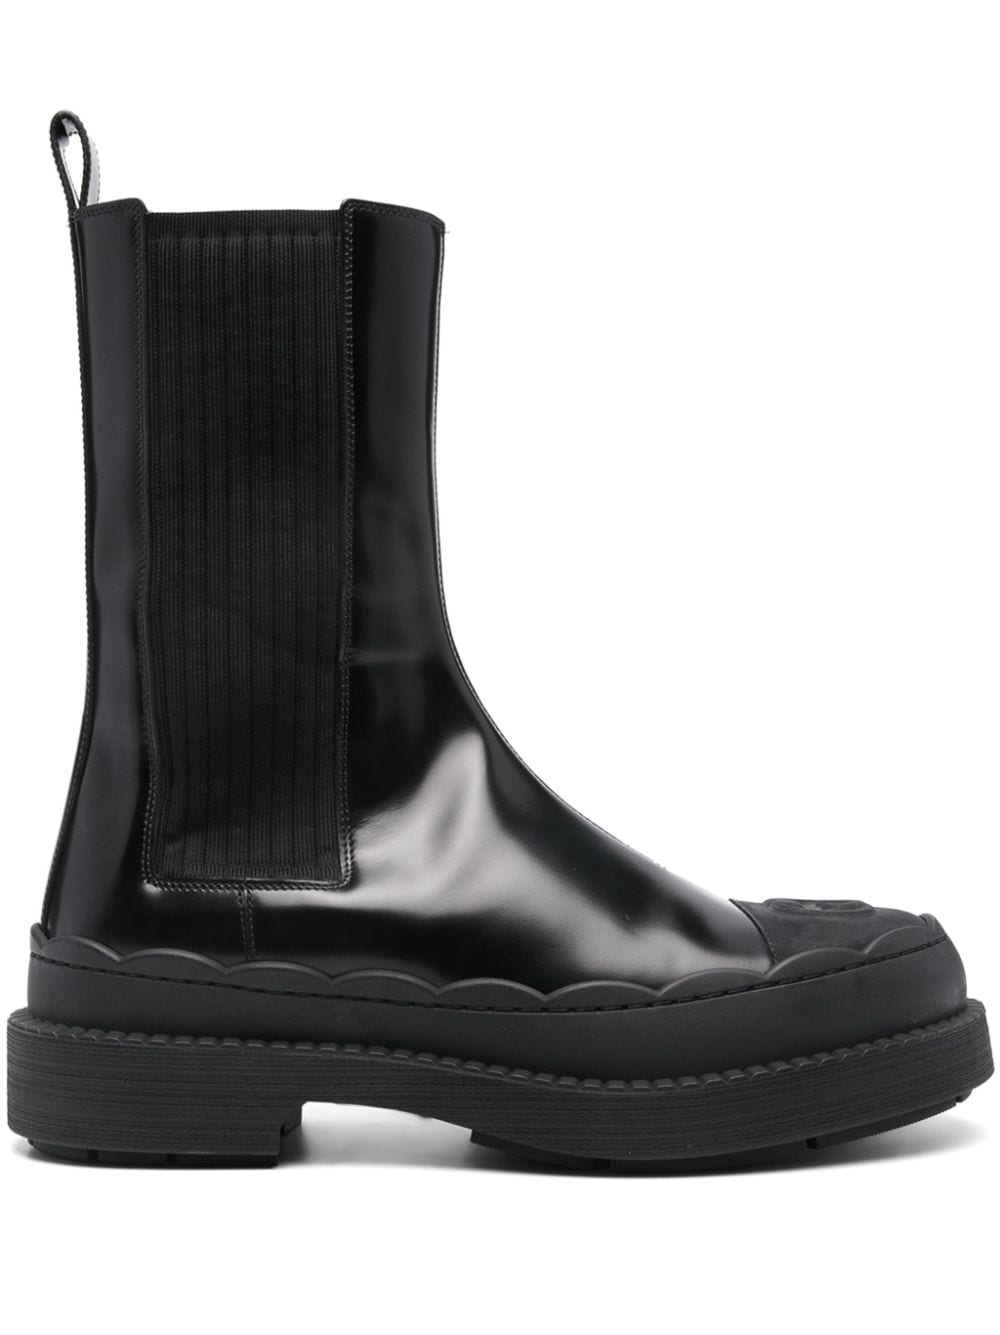 Gucci Interlocking G leather boots - Black von Gucci